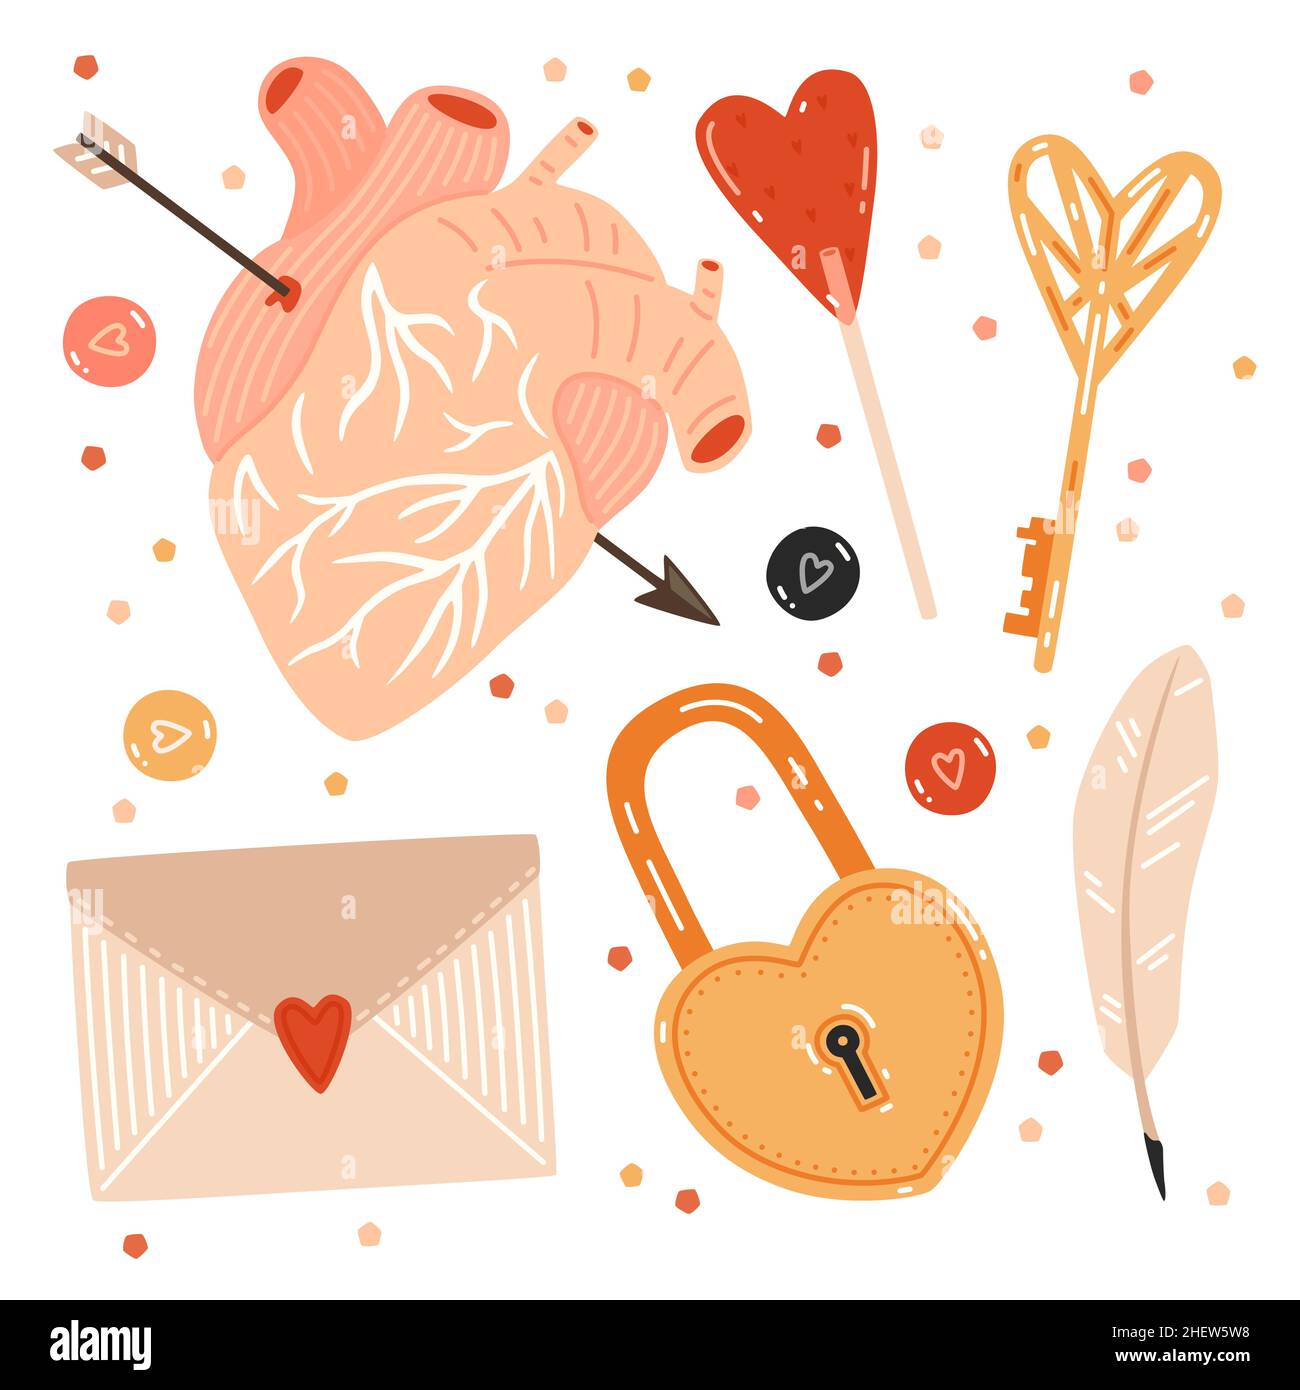 San Valentino. Chiave, serratura a forma di cuore, caramelle, quill, busta e cuore umano trafitto con freccia Illustrazione Vettoriale